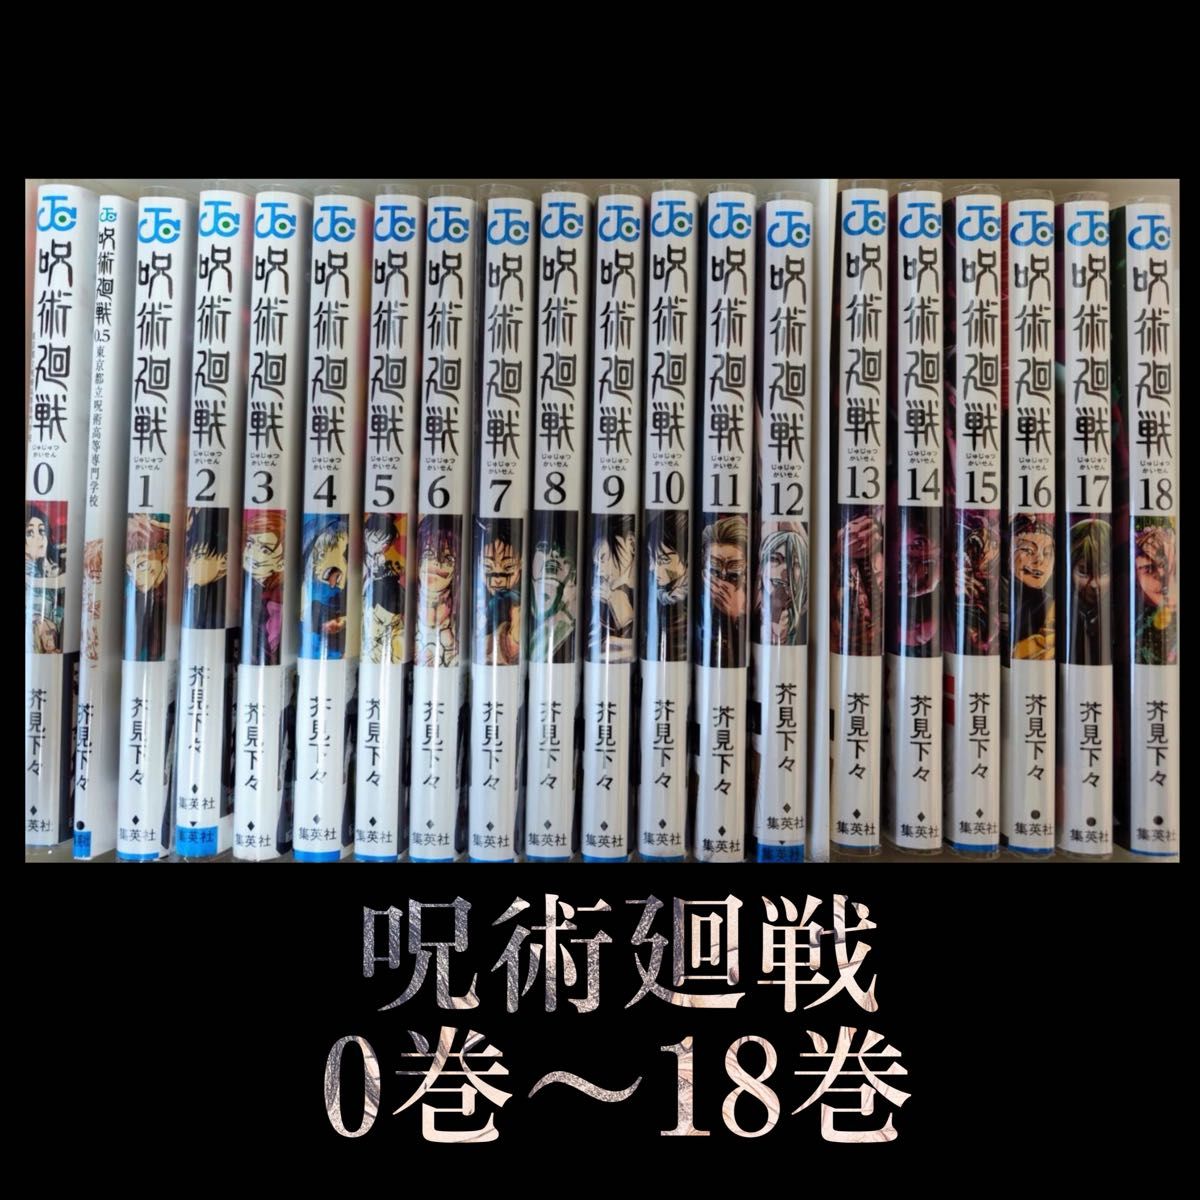 呪術廻戦 漫画 0巻〜18巻 美品 0 5巻 呪術 呪術廻戦0 映画特典 呪術廻